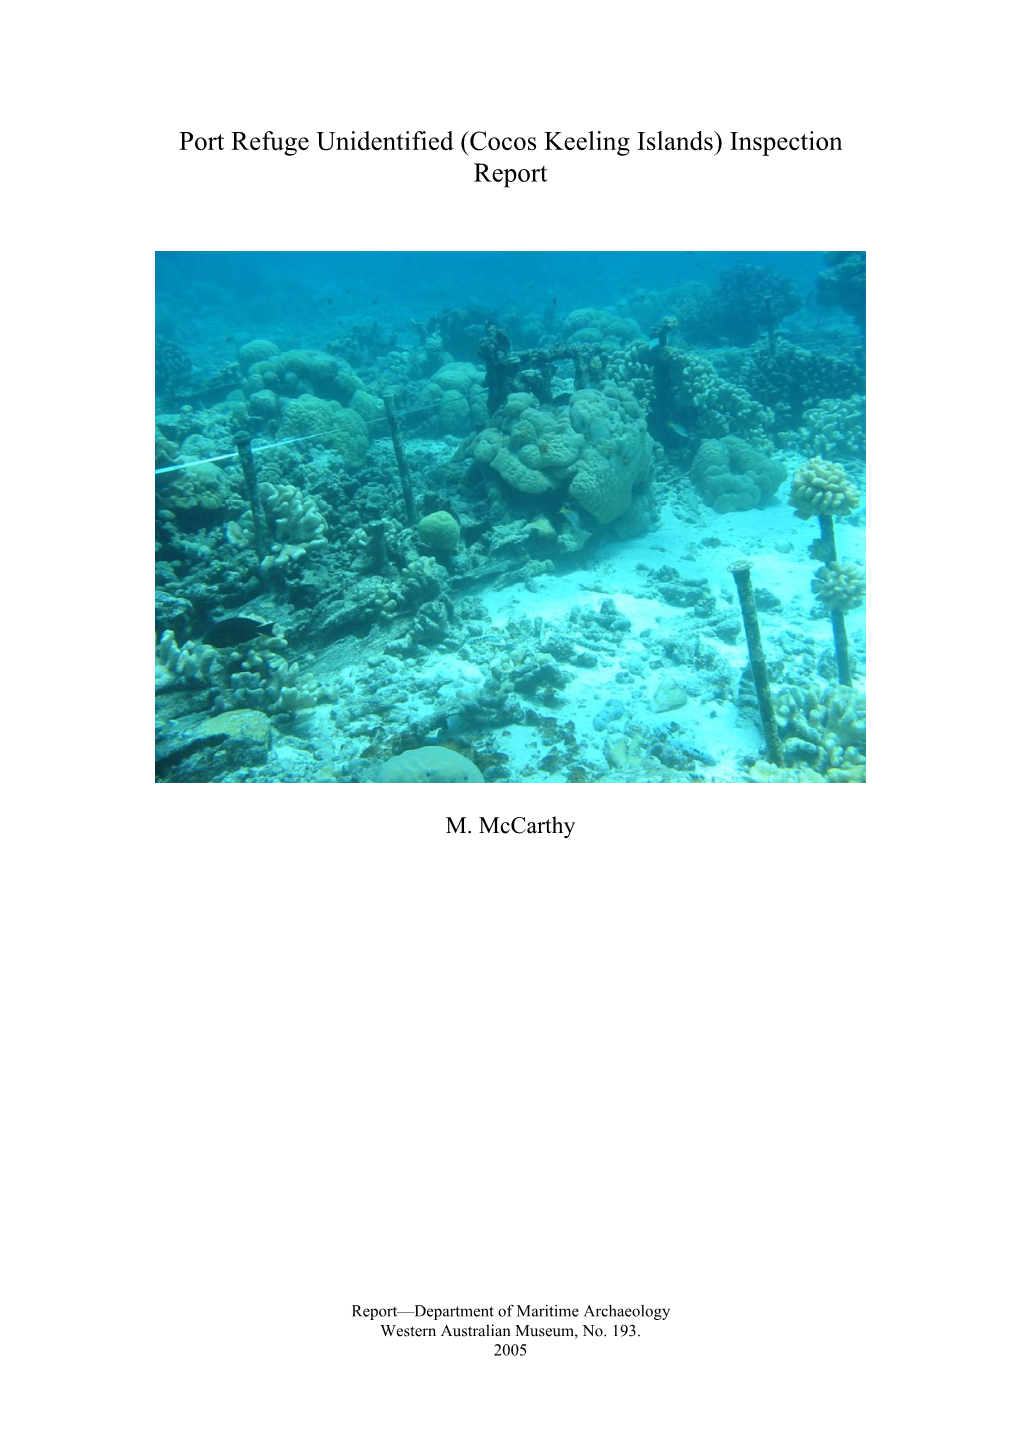 Cocos Keeling Islands) Inspection Report